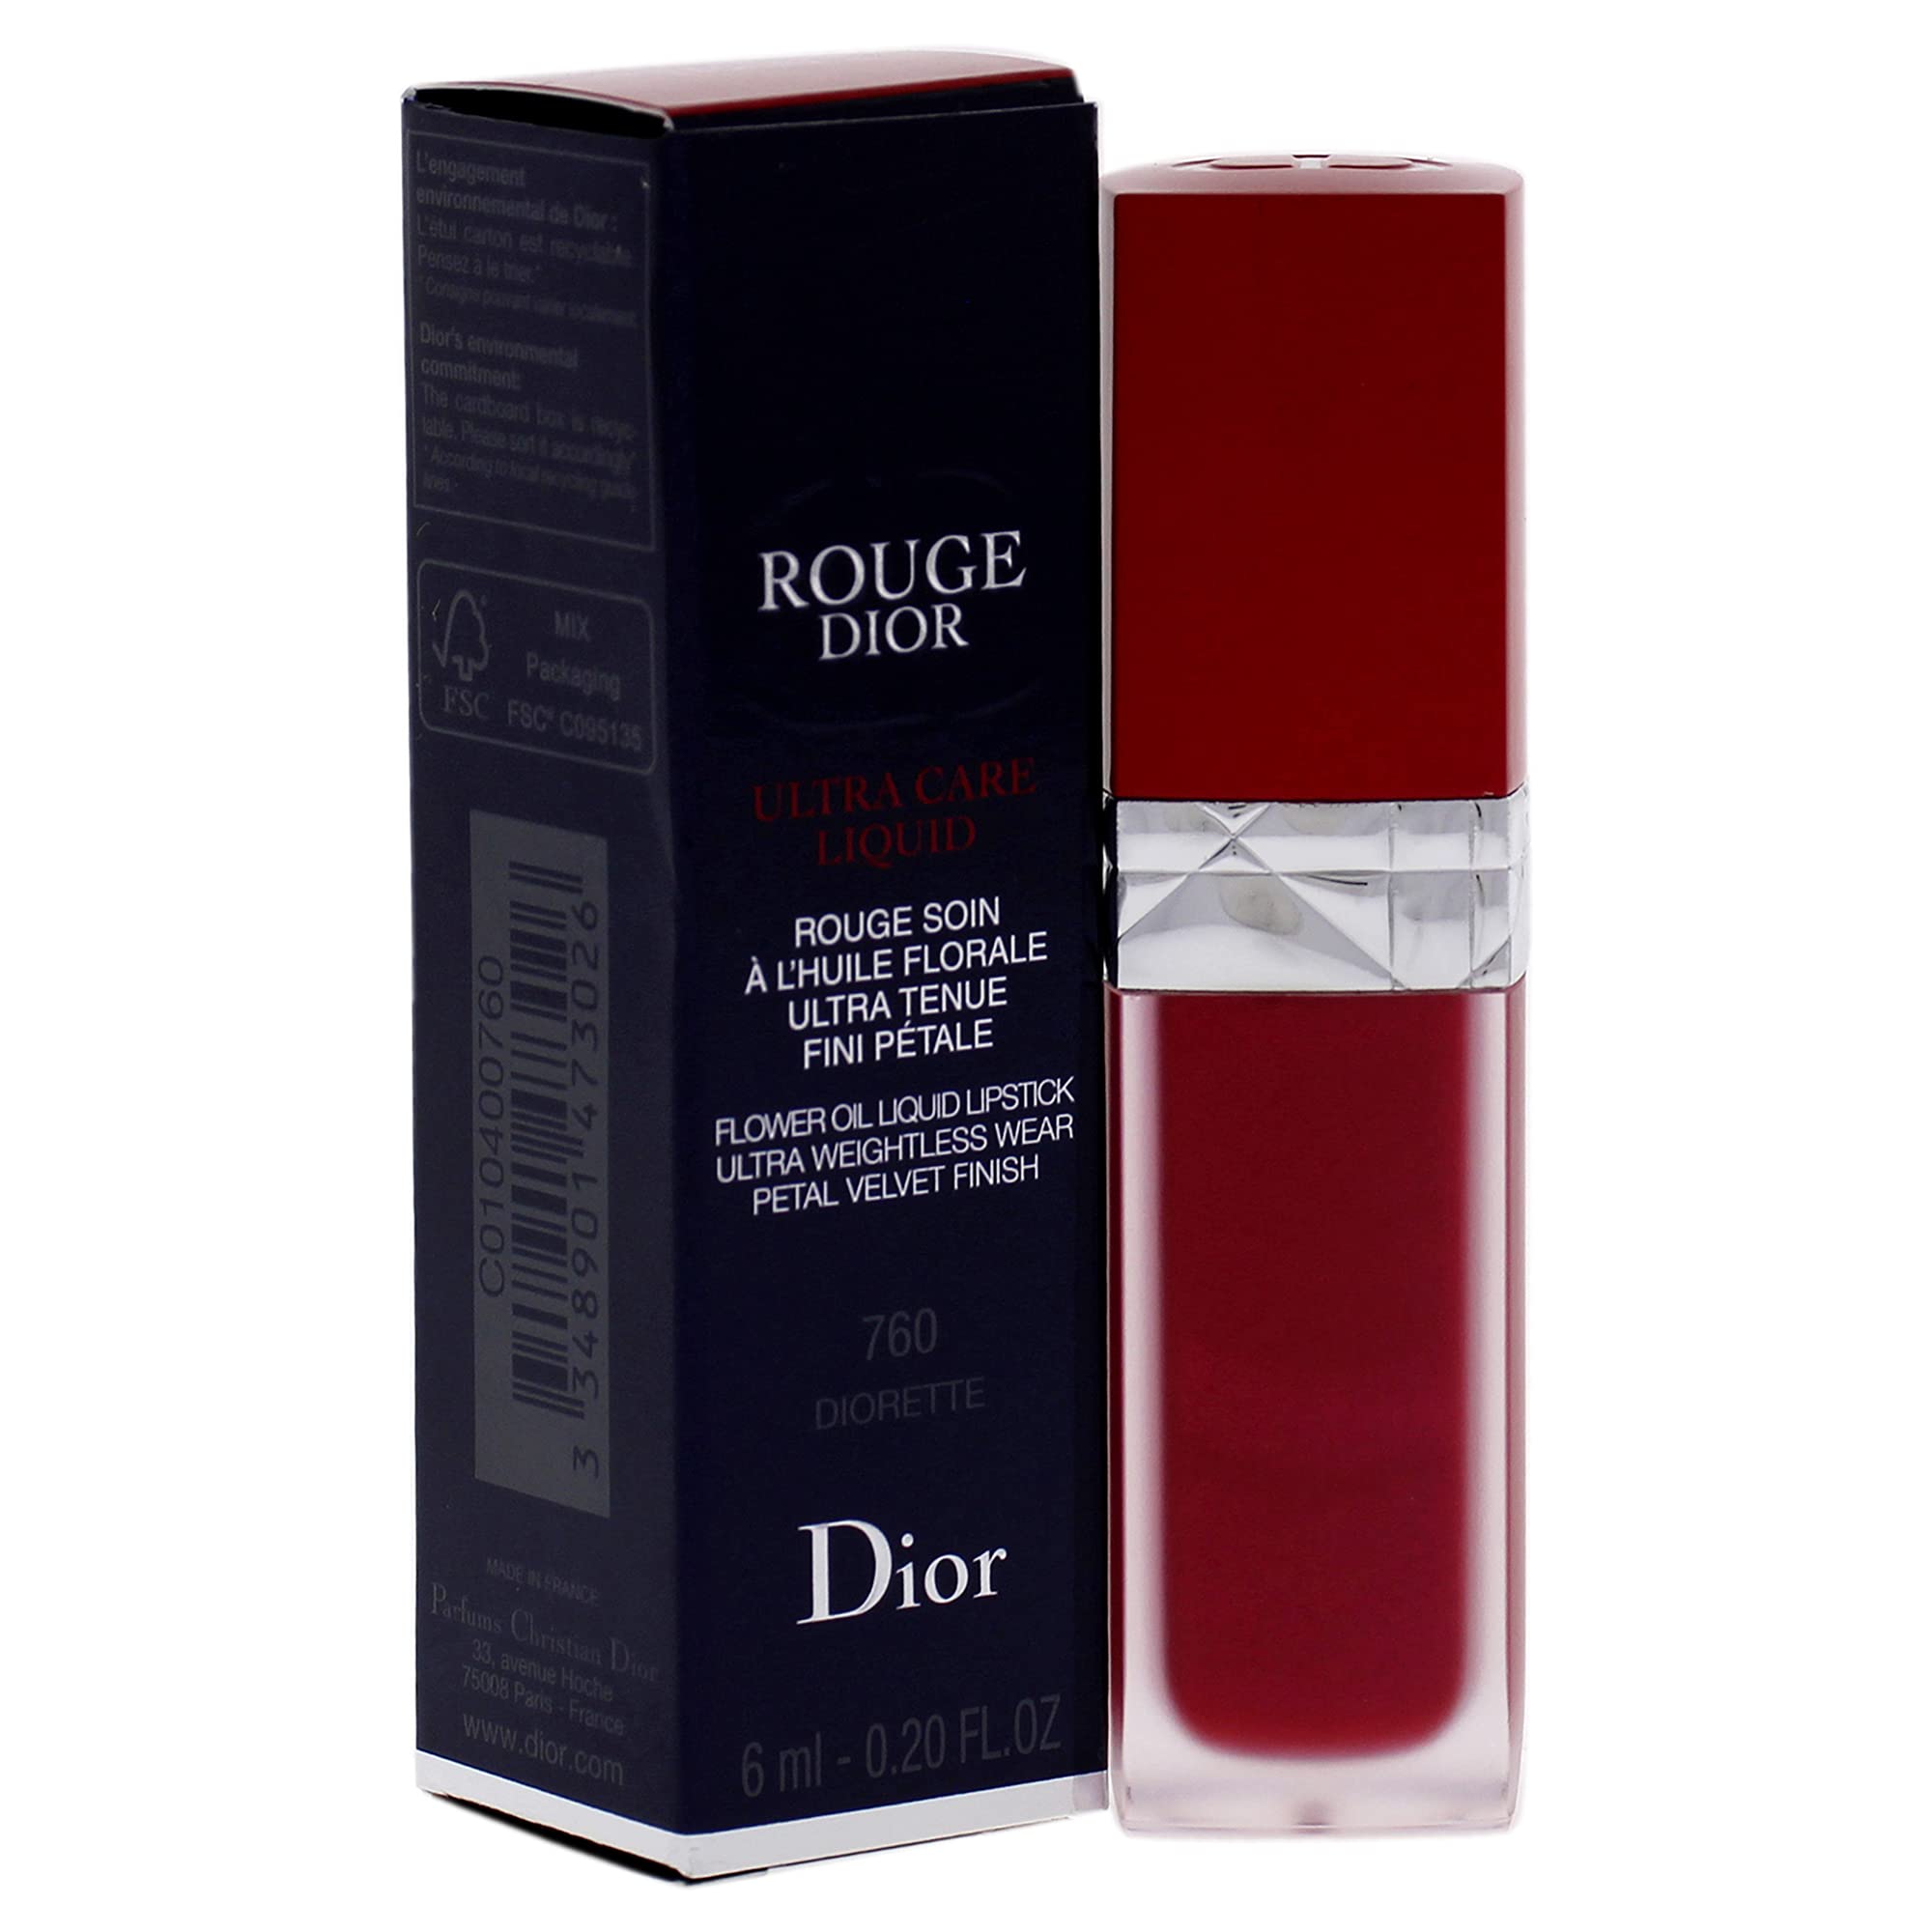 Dior Beauty Rouge Dior Lipstick365 New World MakeupLipLipstick  IFCHICCOM